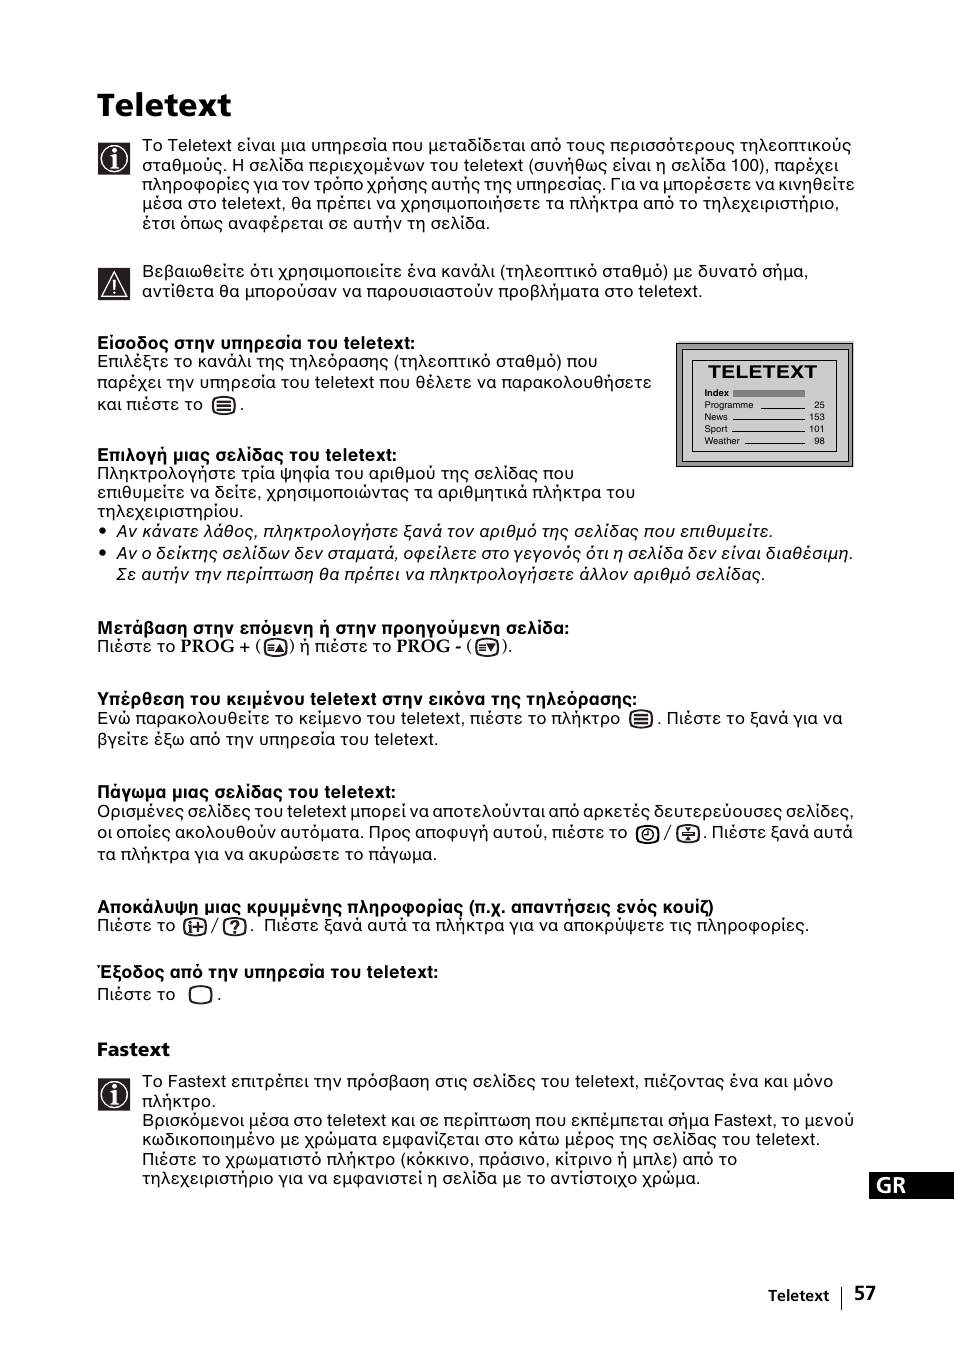 Teletext | Sony KE-42MR1 Manuale d'uso | Pagina 283 / 302